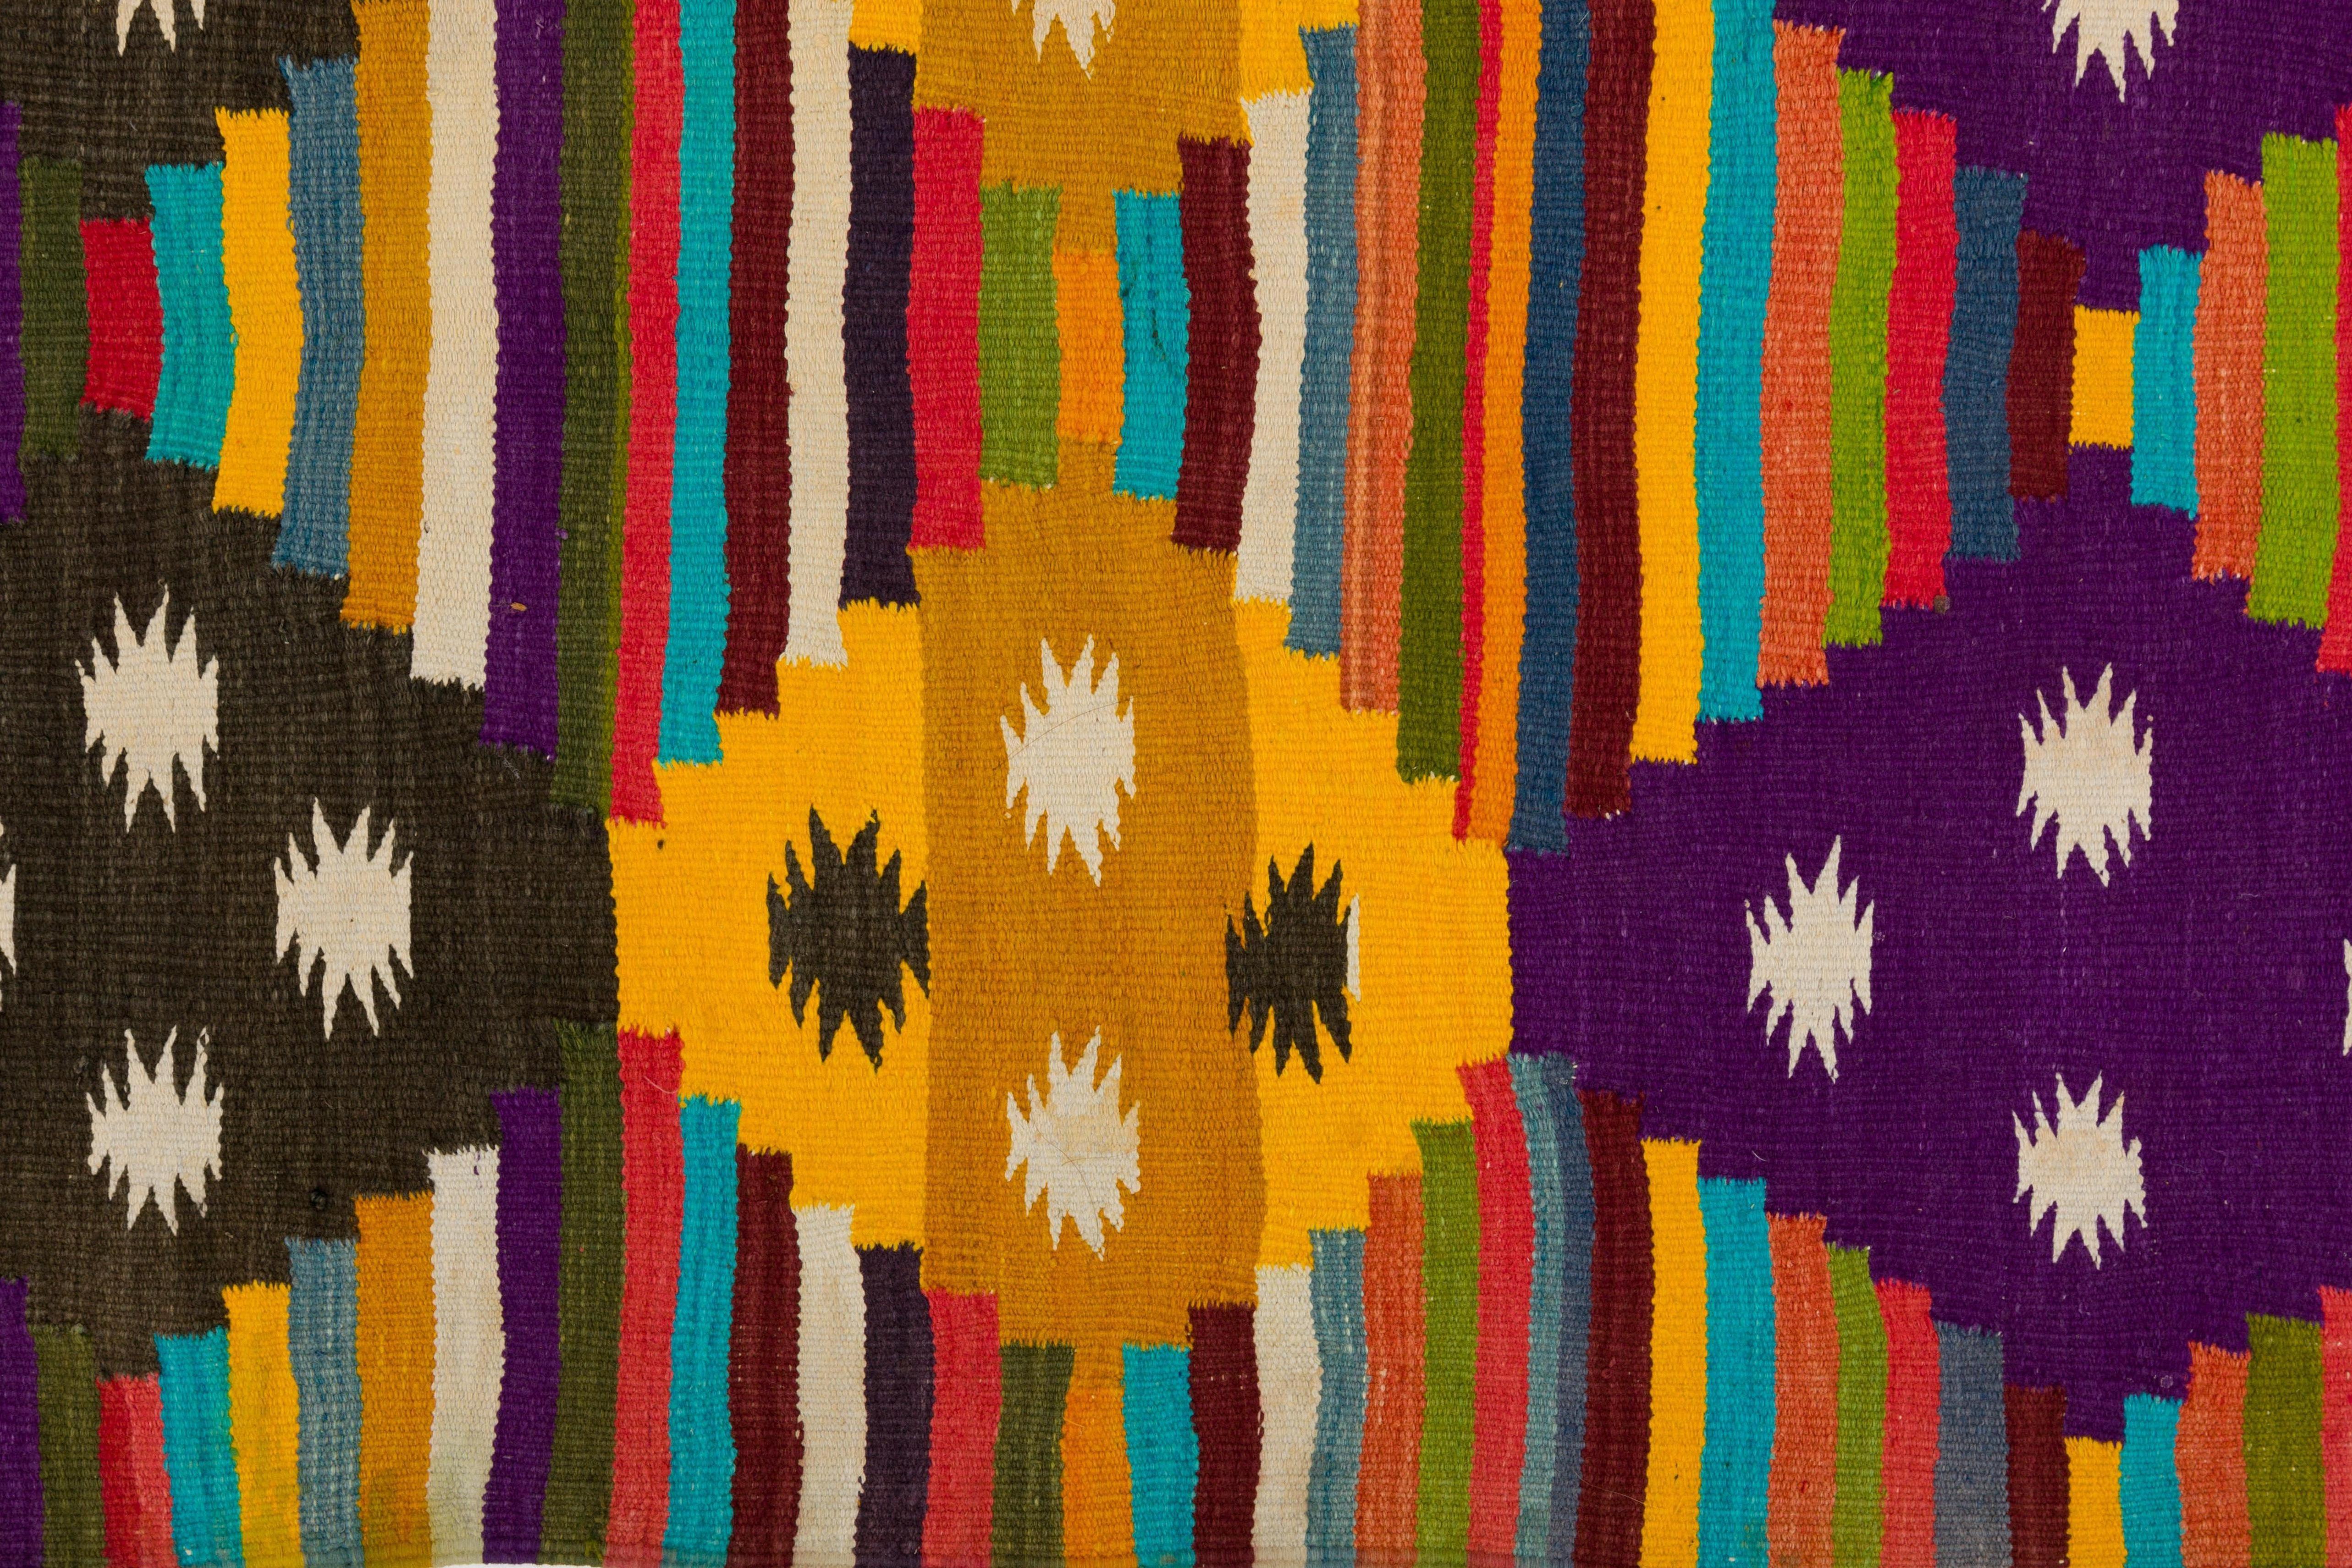 Lebendiger, mehrfarbig gestreifter, handgewebter Dhurrie-Teppich aus Baumwolle aus Rajasthan, Indien.
Fein ausgearbeitetes Rautenmuster innerhalb der Streifen. Wunderschöne handgeknüpfte Fransen an beiden Enden.